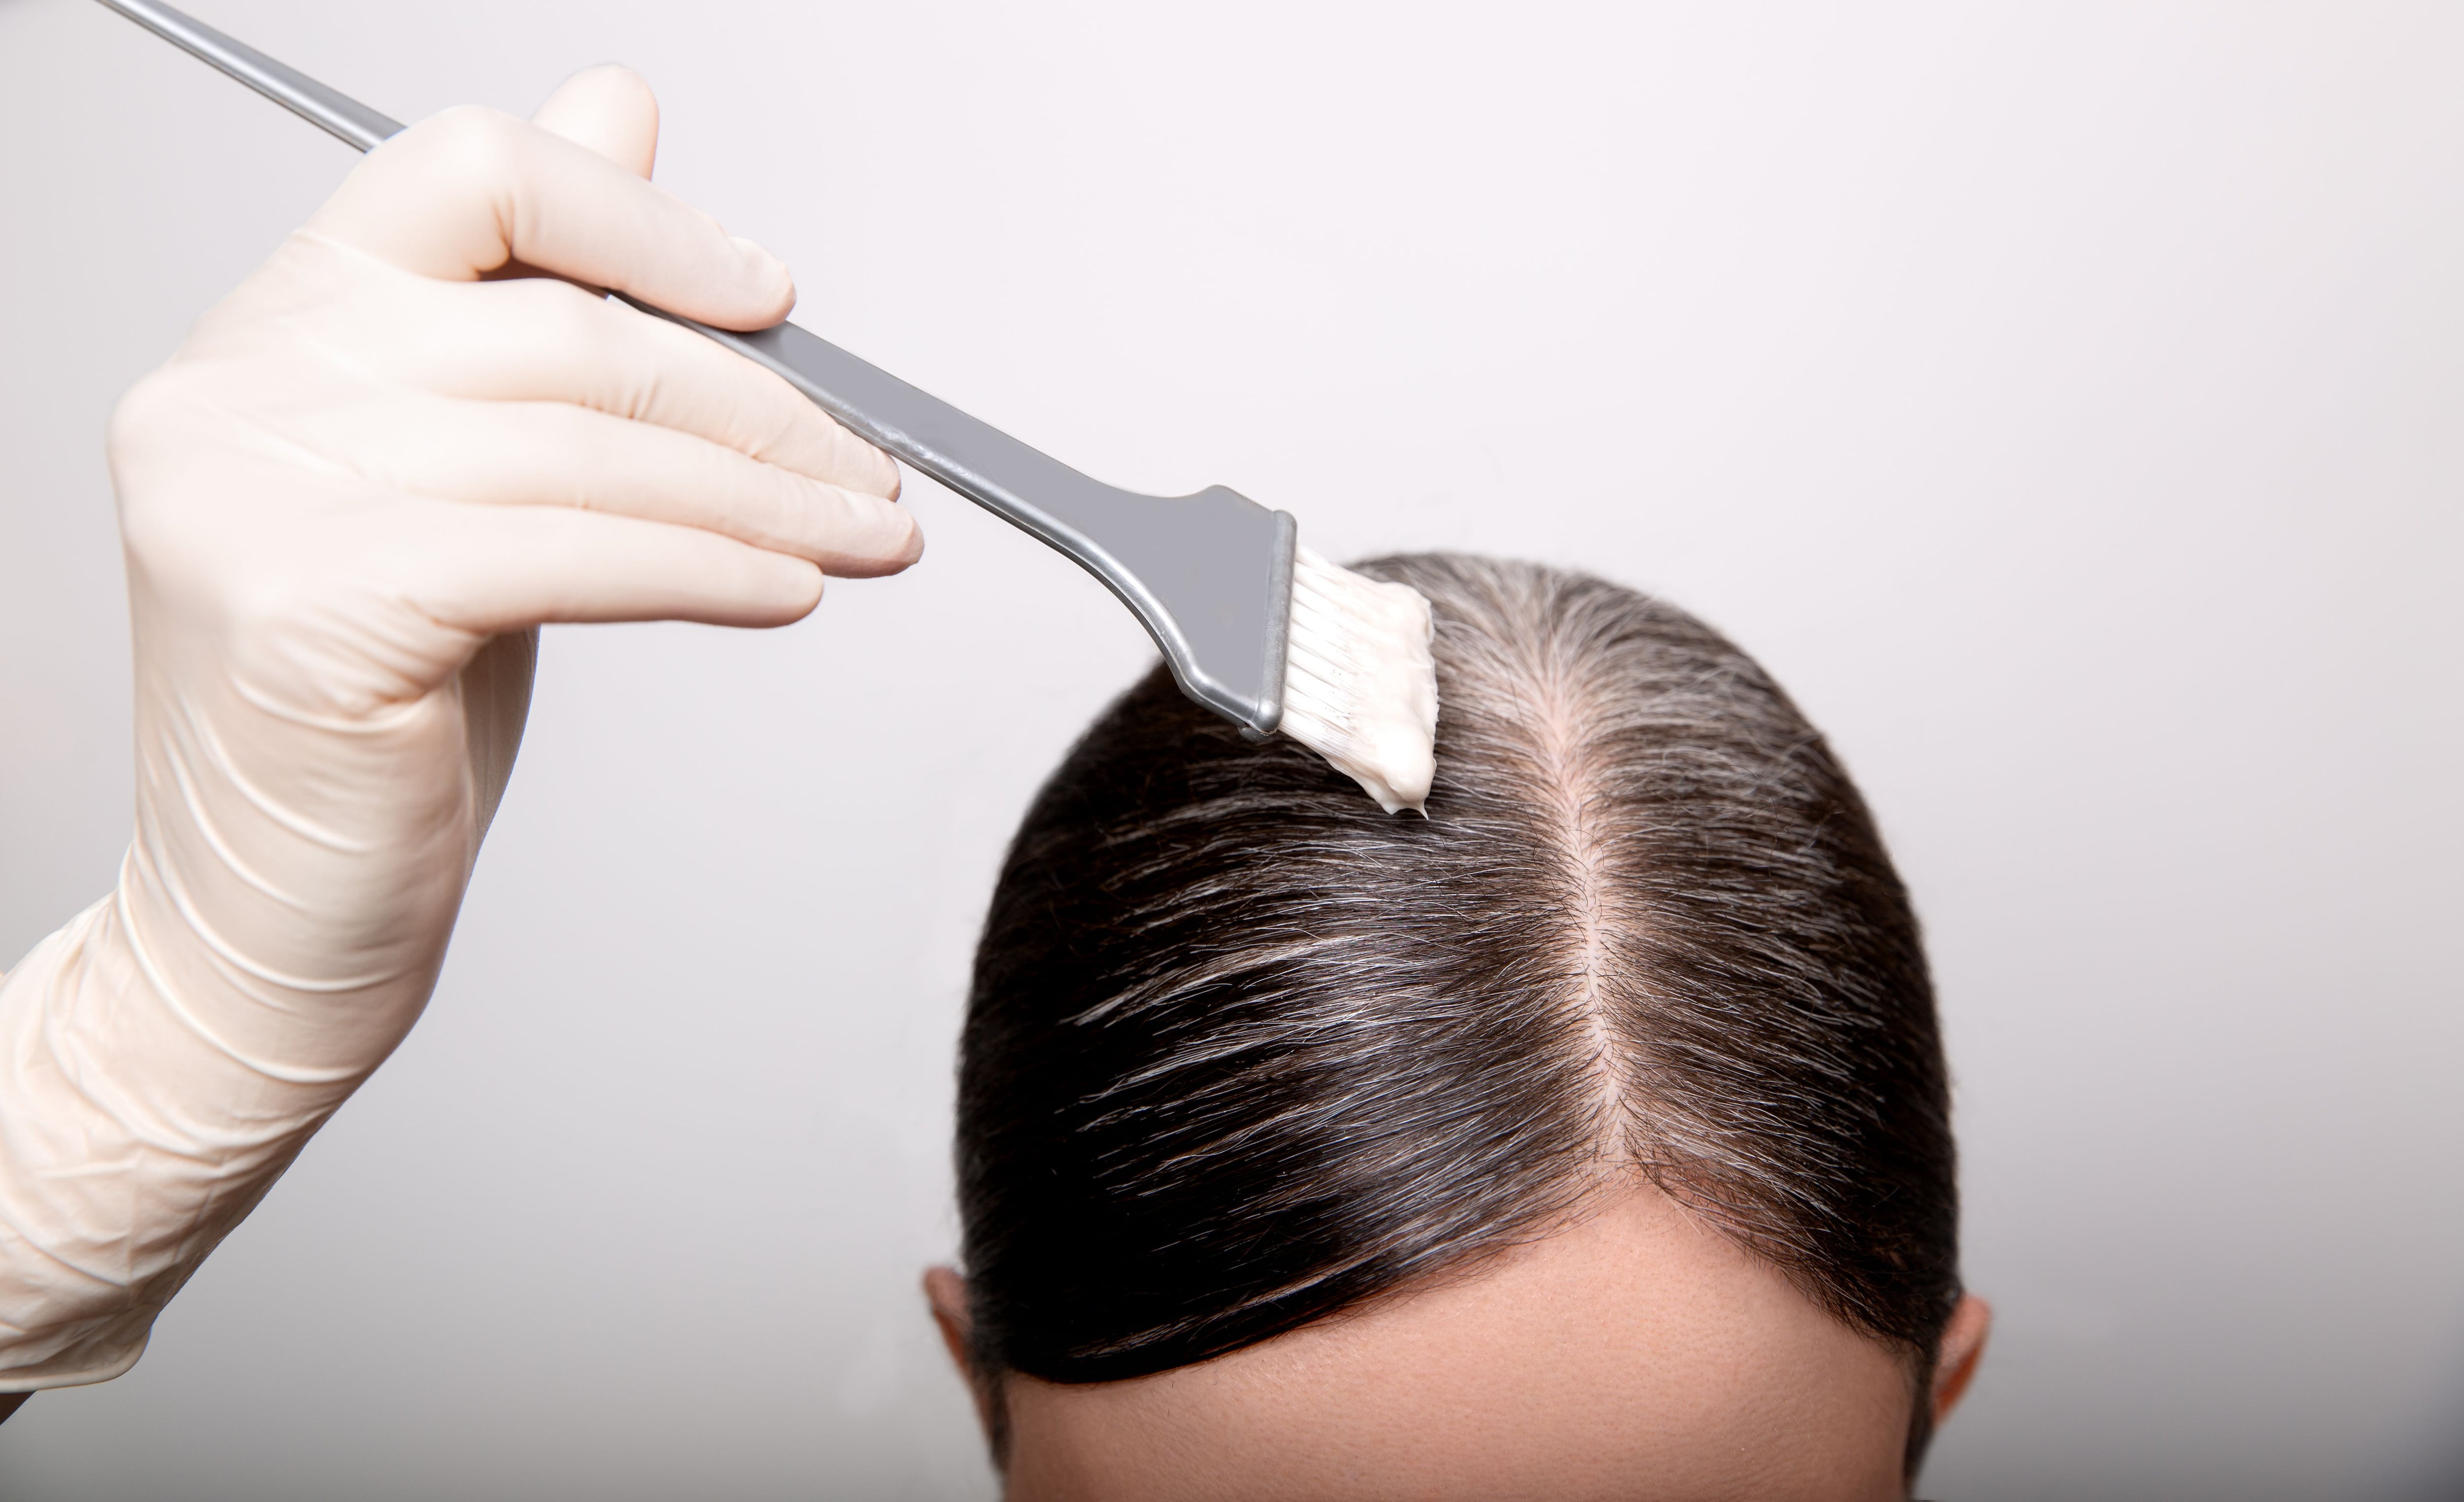 Cómo preparar una mascarilla de y huevo para reparar el cabello?